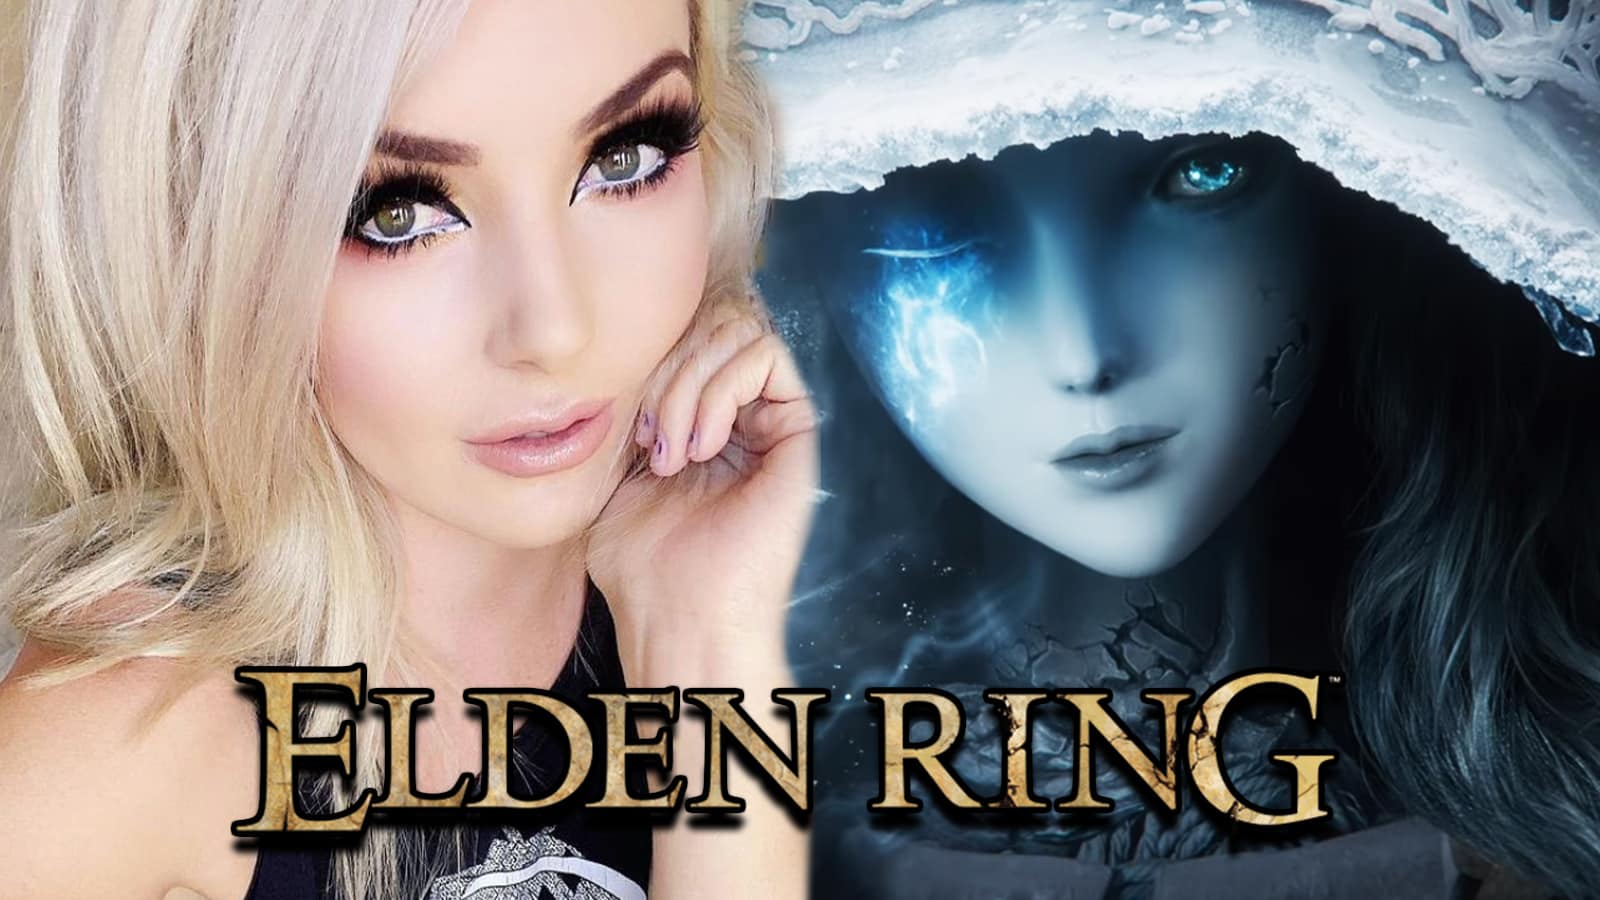 Ranni (Elden Ring), witch, Elden Ring, video games